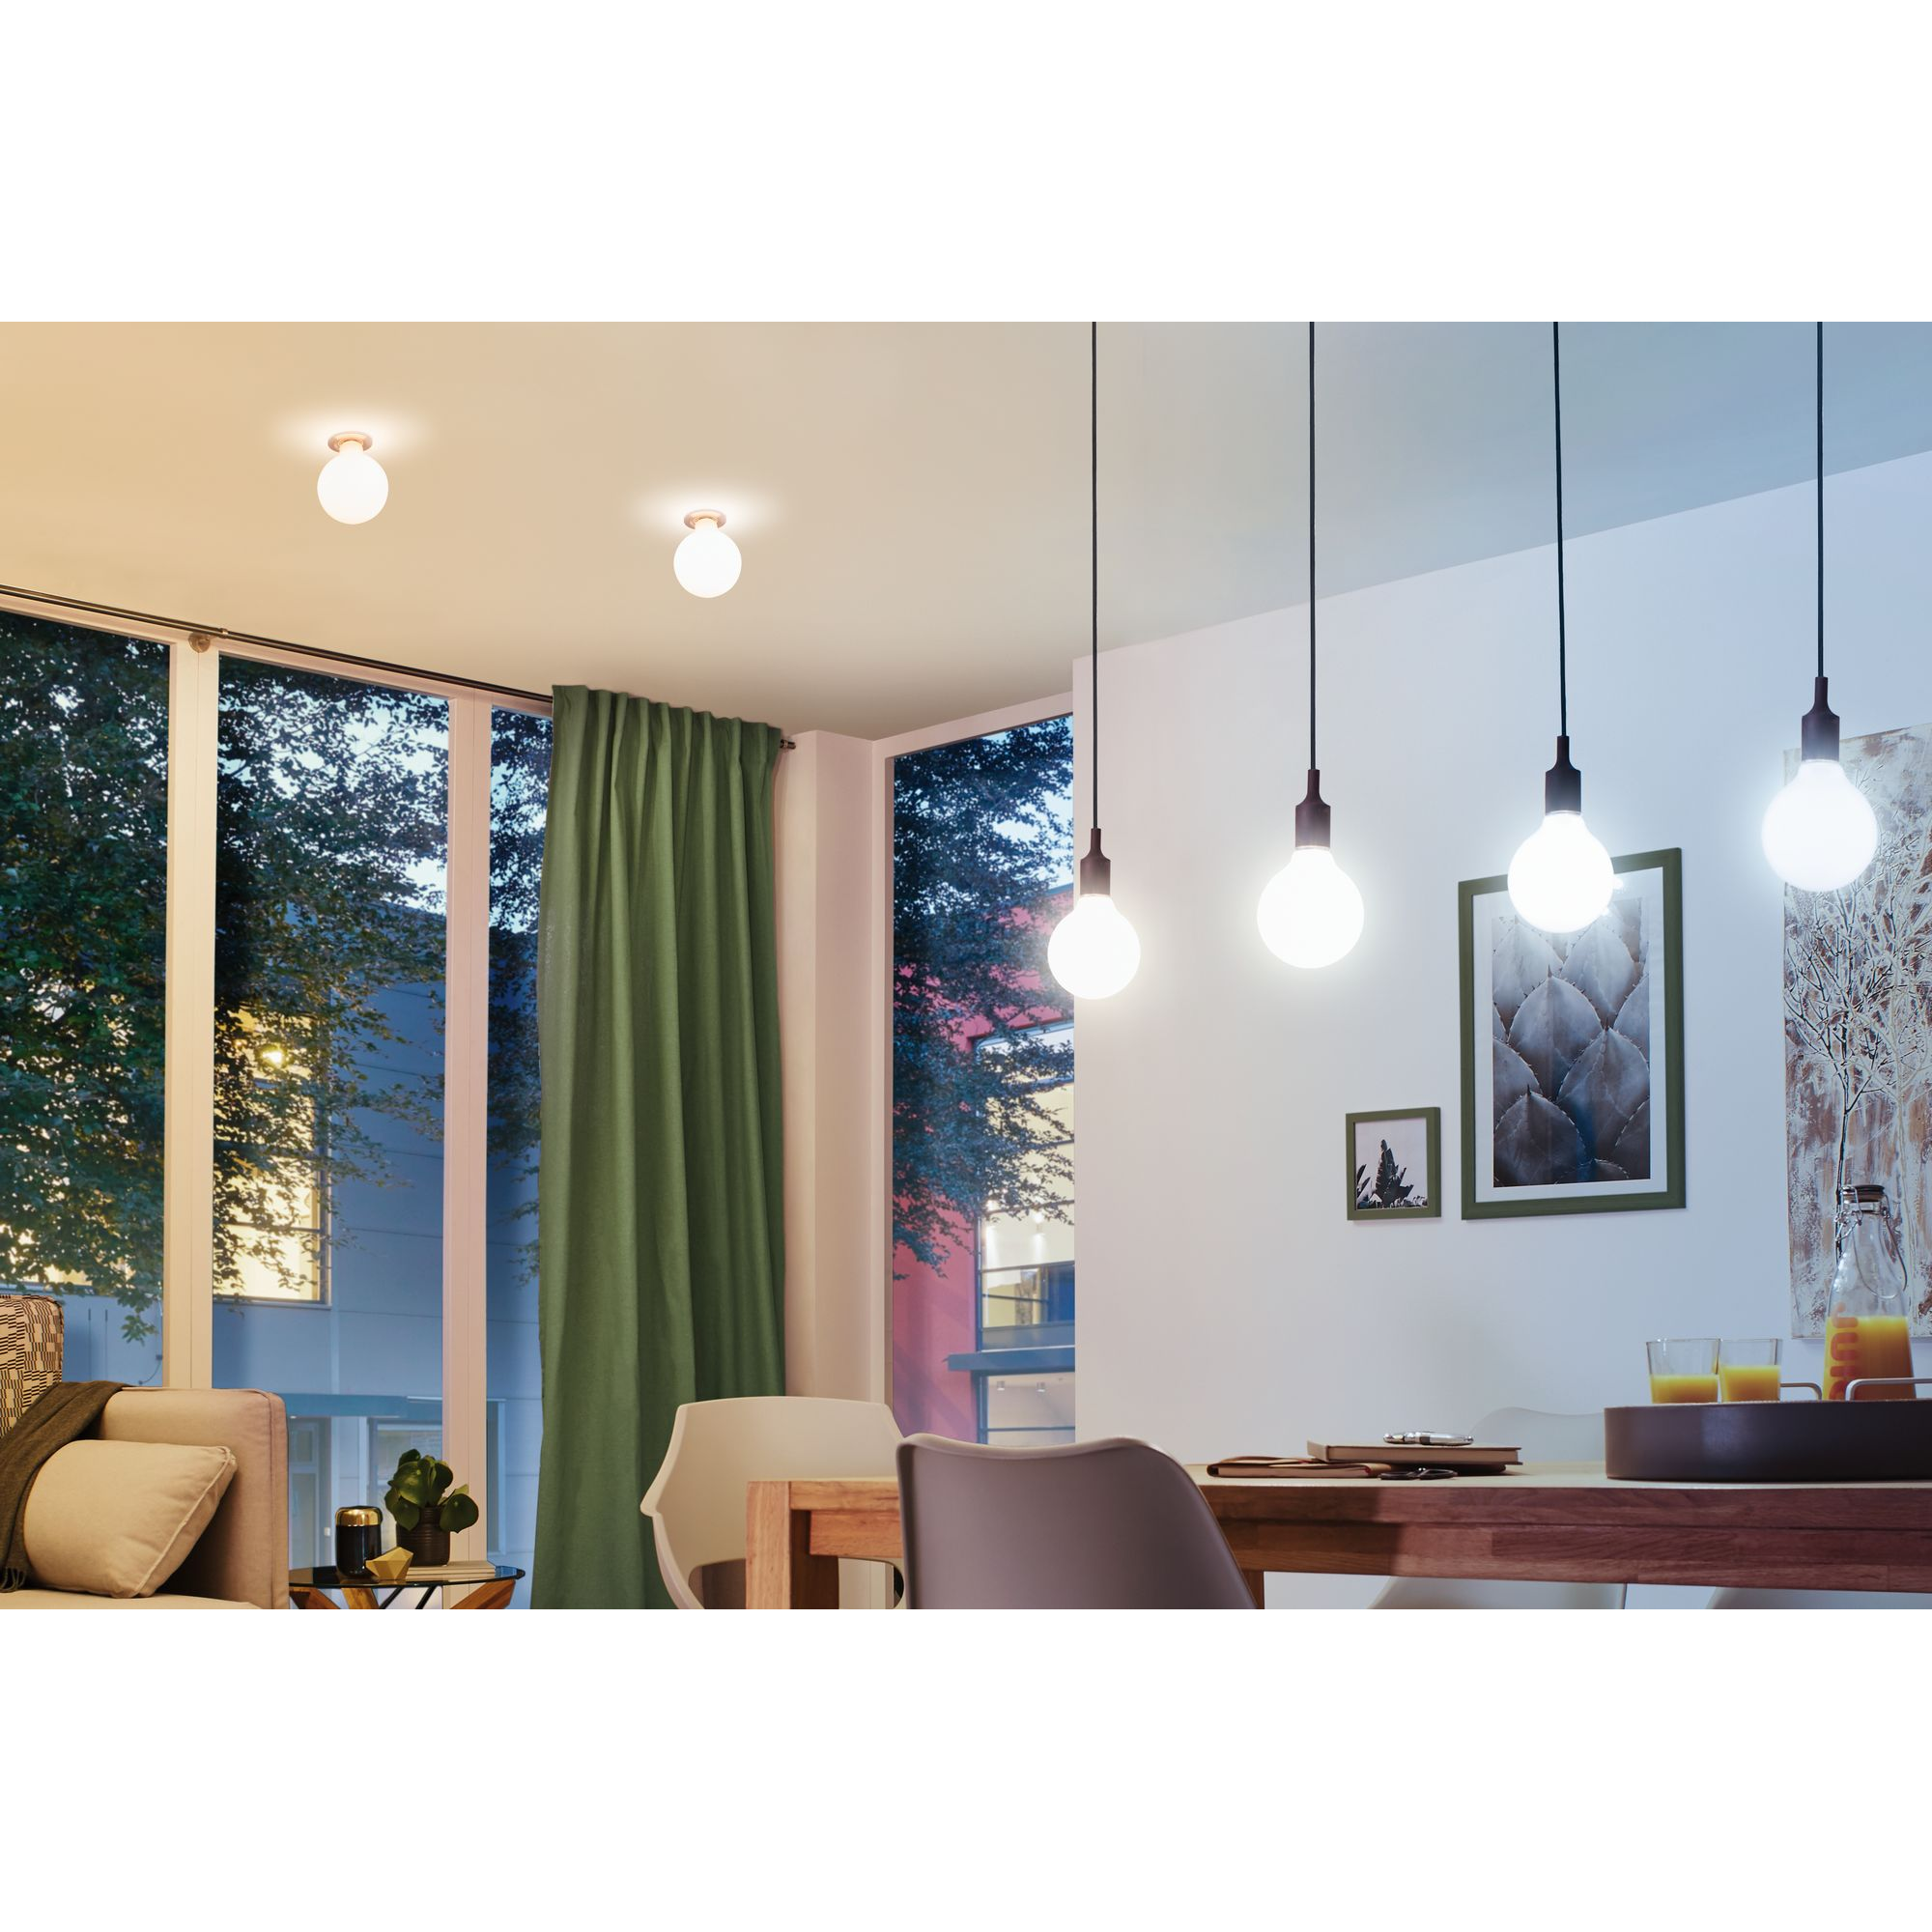 LED-Globelampe ZigBee E27 7W (60W) 806 lm opal warm/tageslichtweiß + product picture